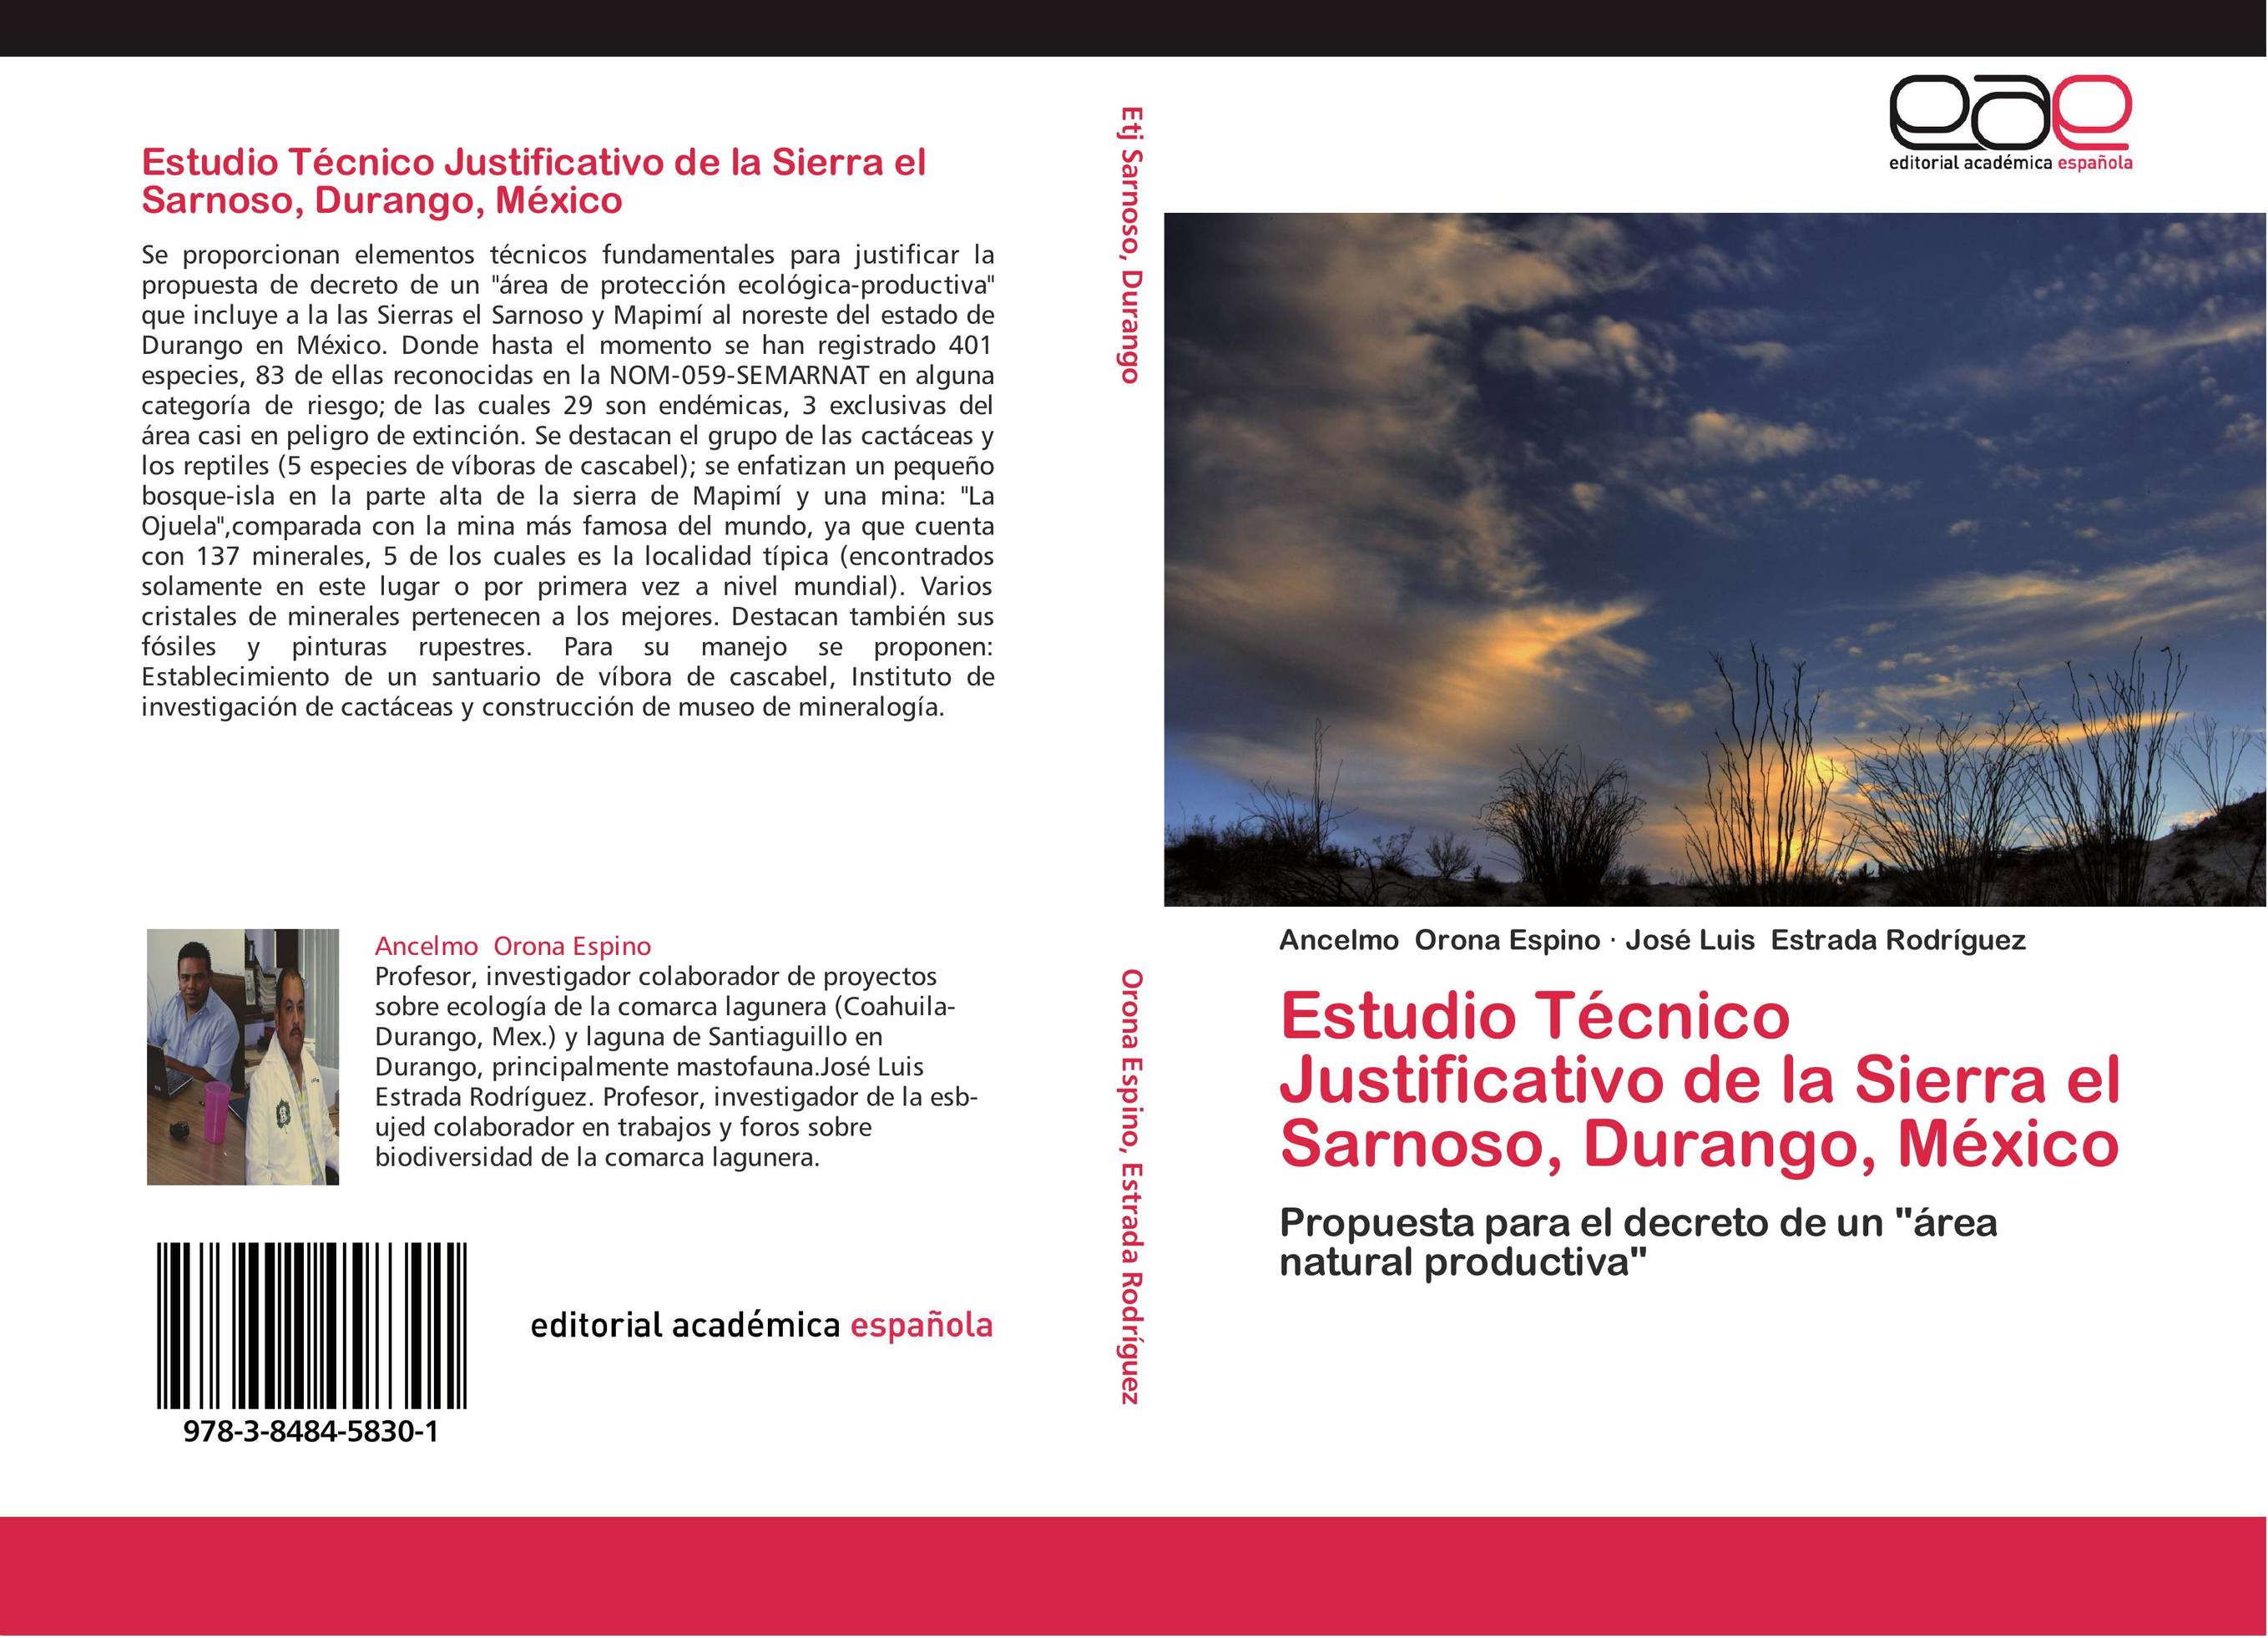 Estudio Técnico Justificativo de la Sierra el Sarnoso, Durango, México